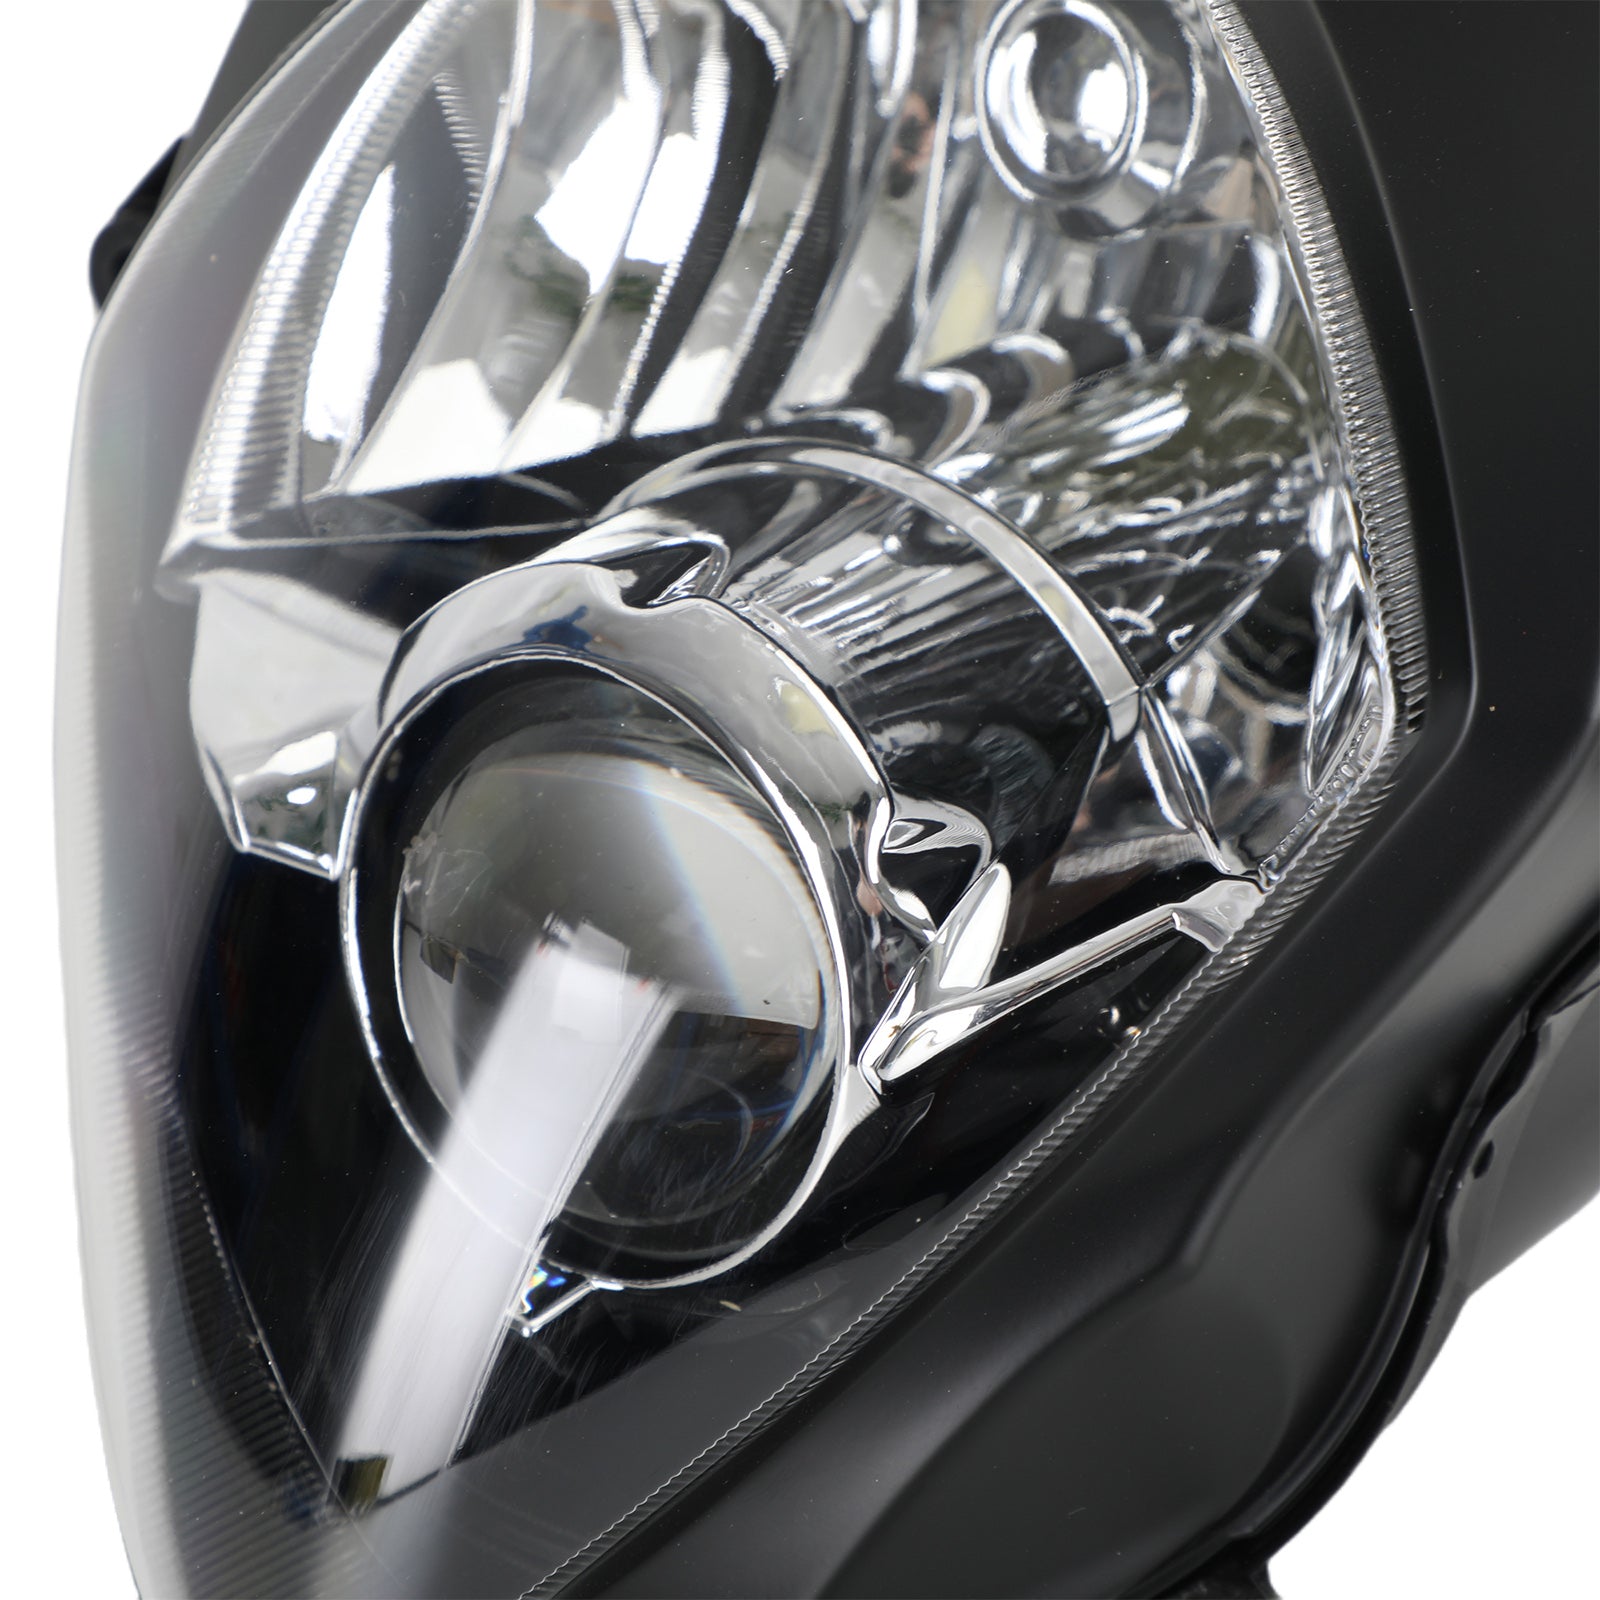 Faro anteriore griglia faro LED protettore bianco per Suzuki Gsxr1000 07-08 K7 generico